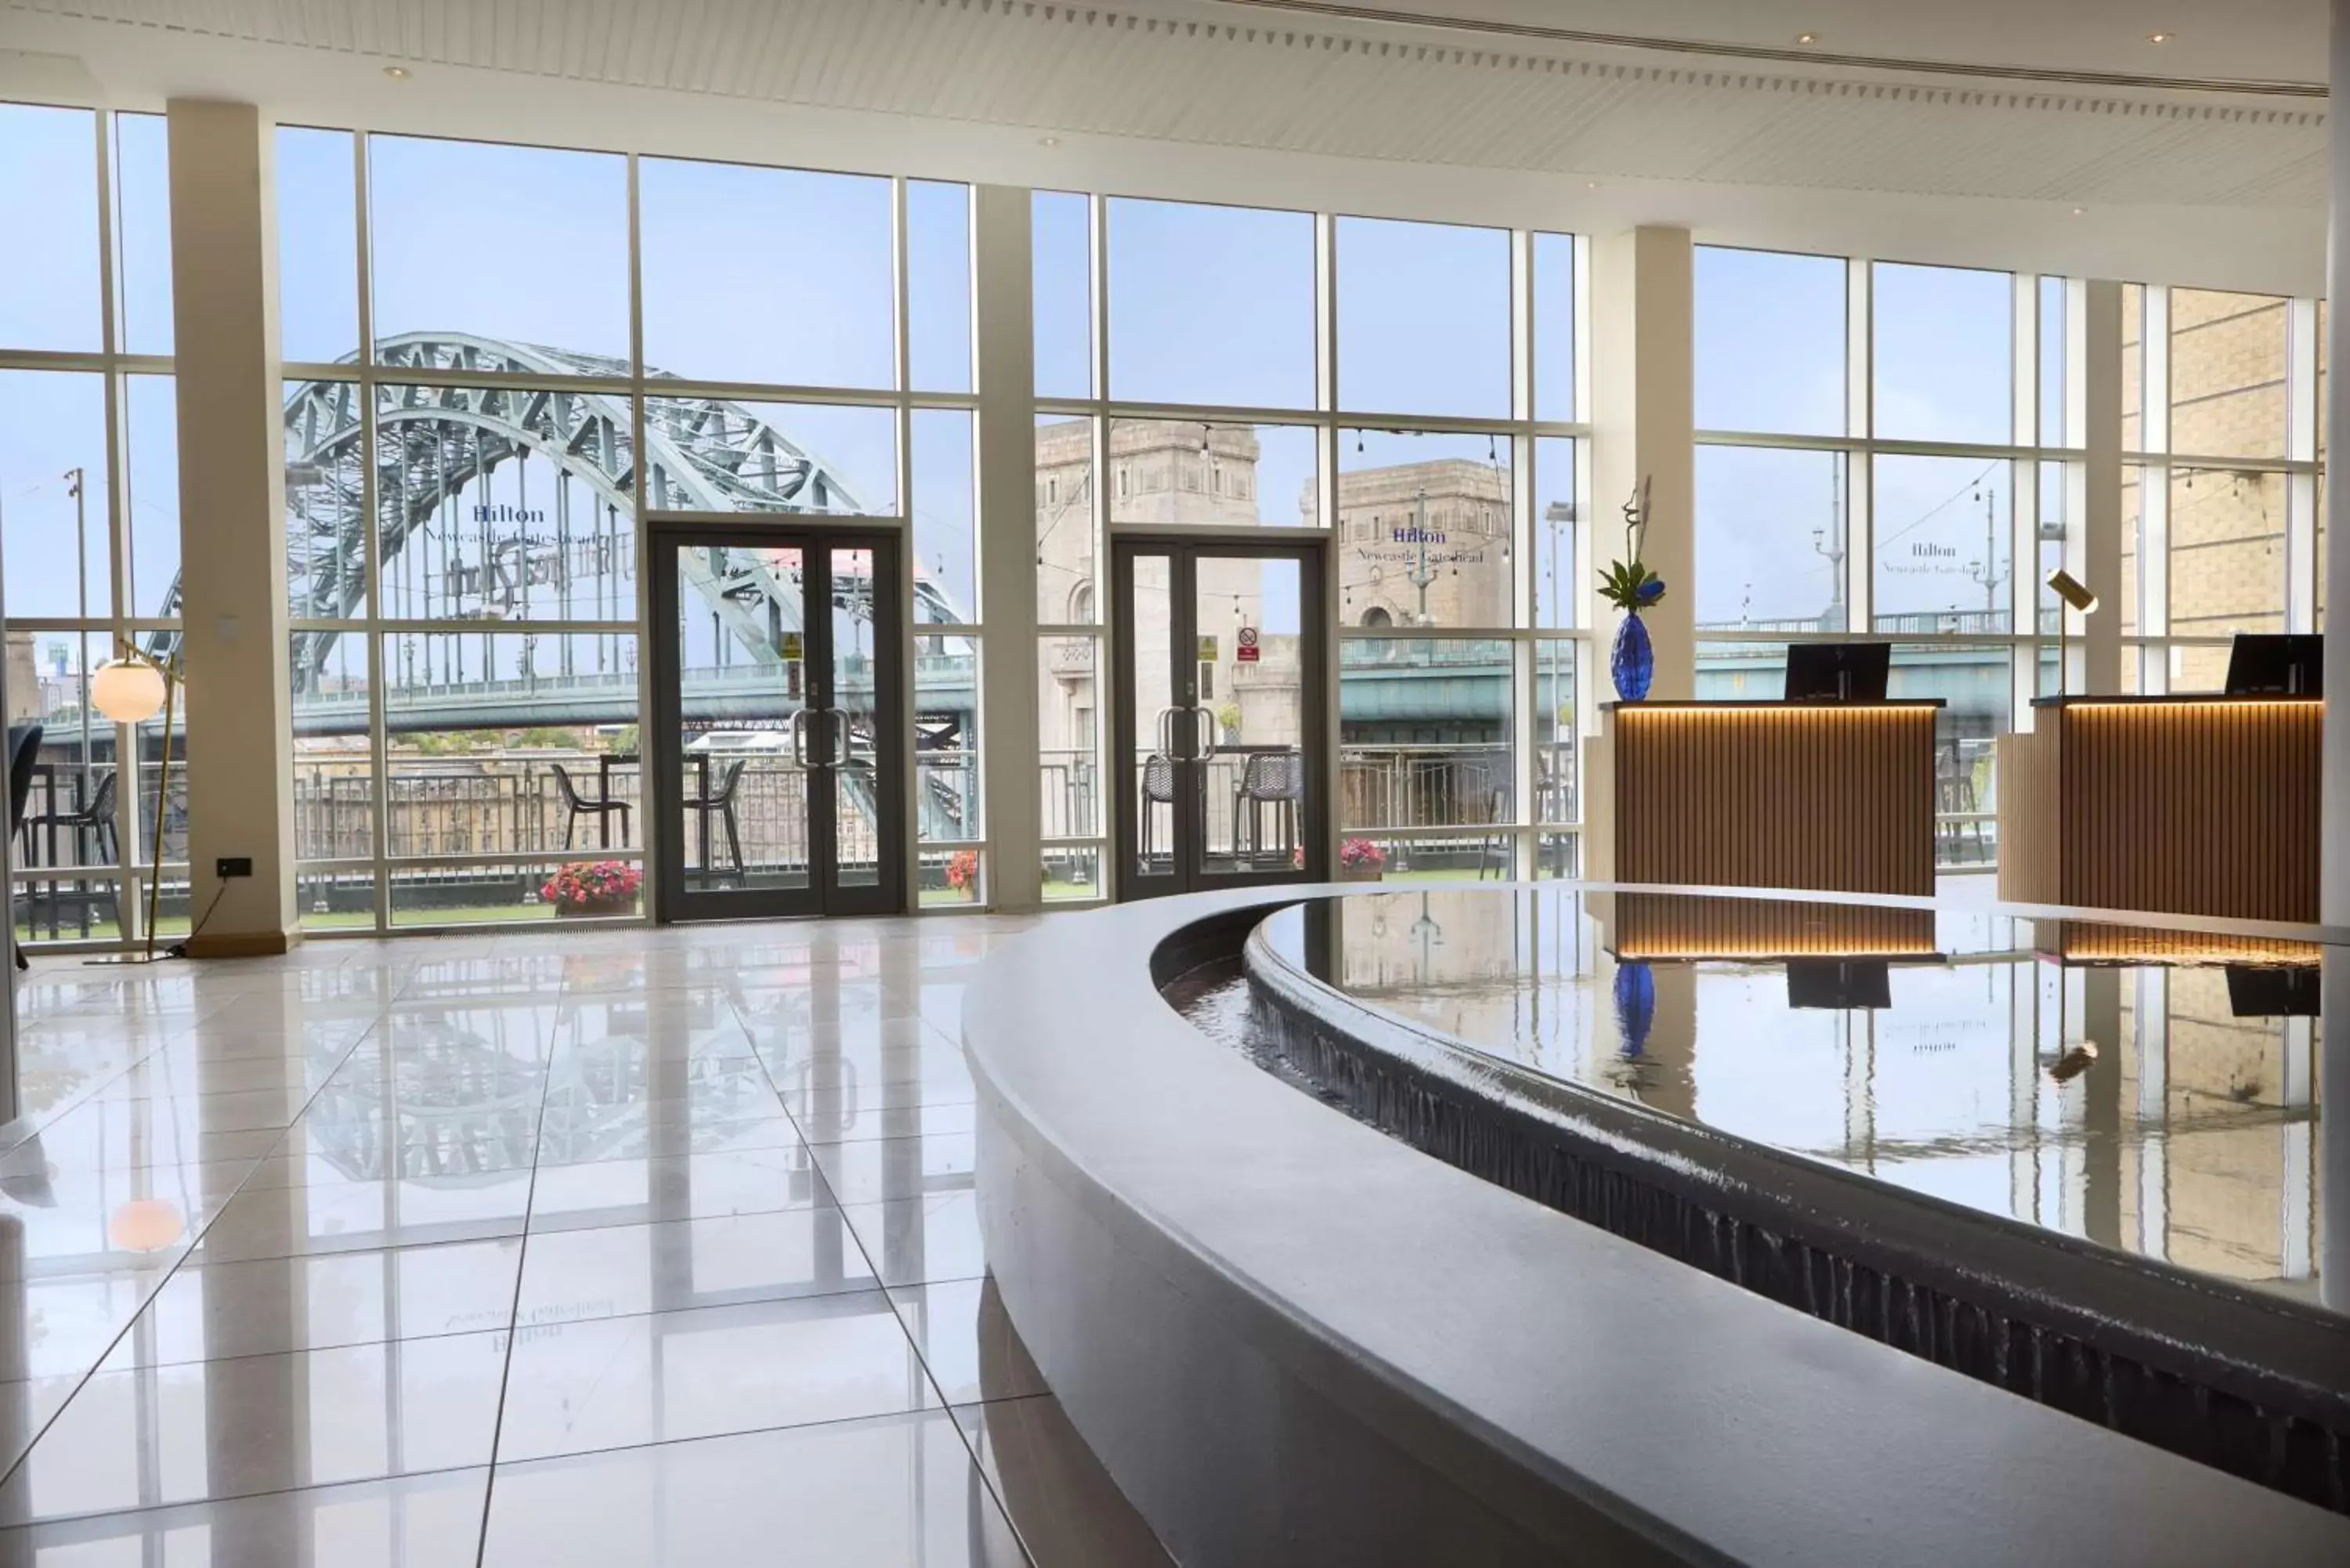 Lobby or reception in Hilton Newcastle Gateshead